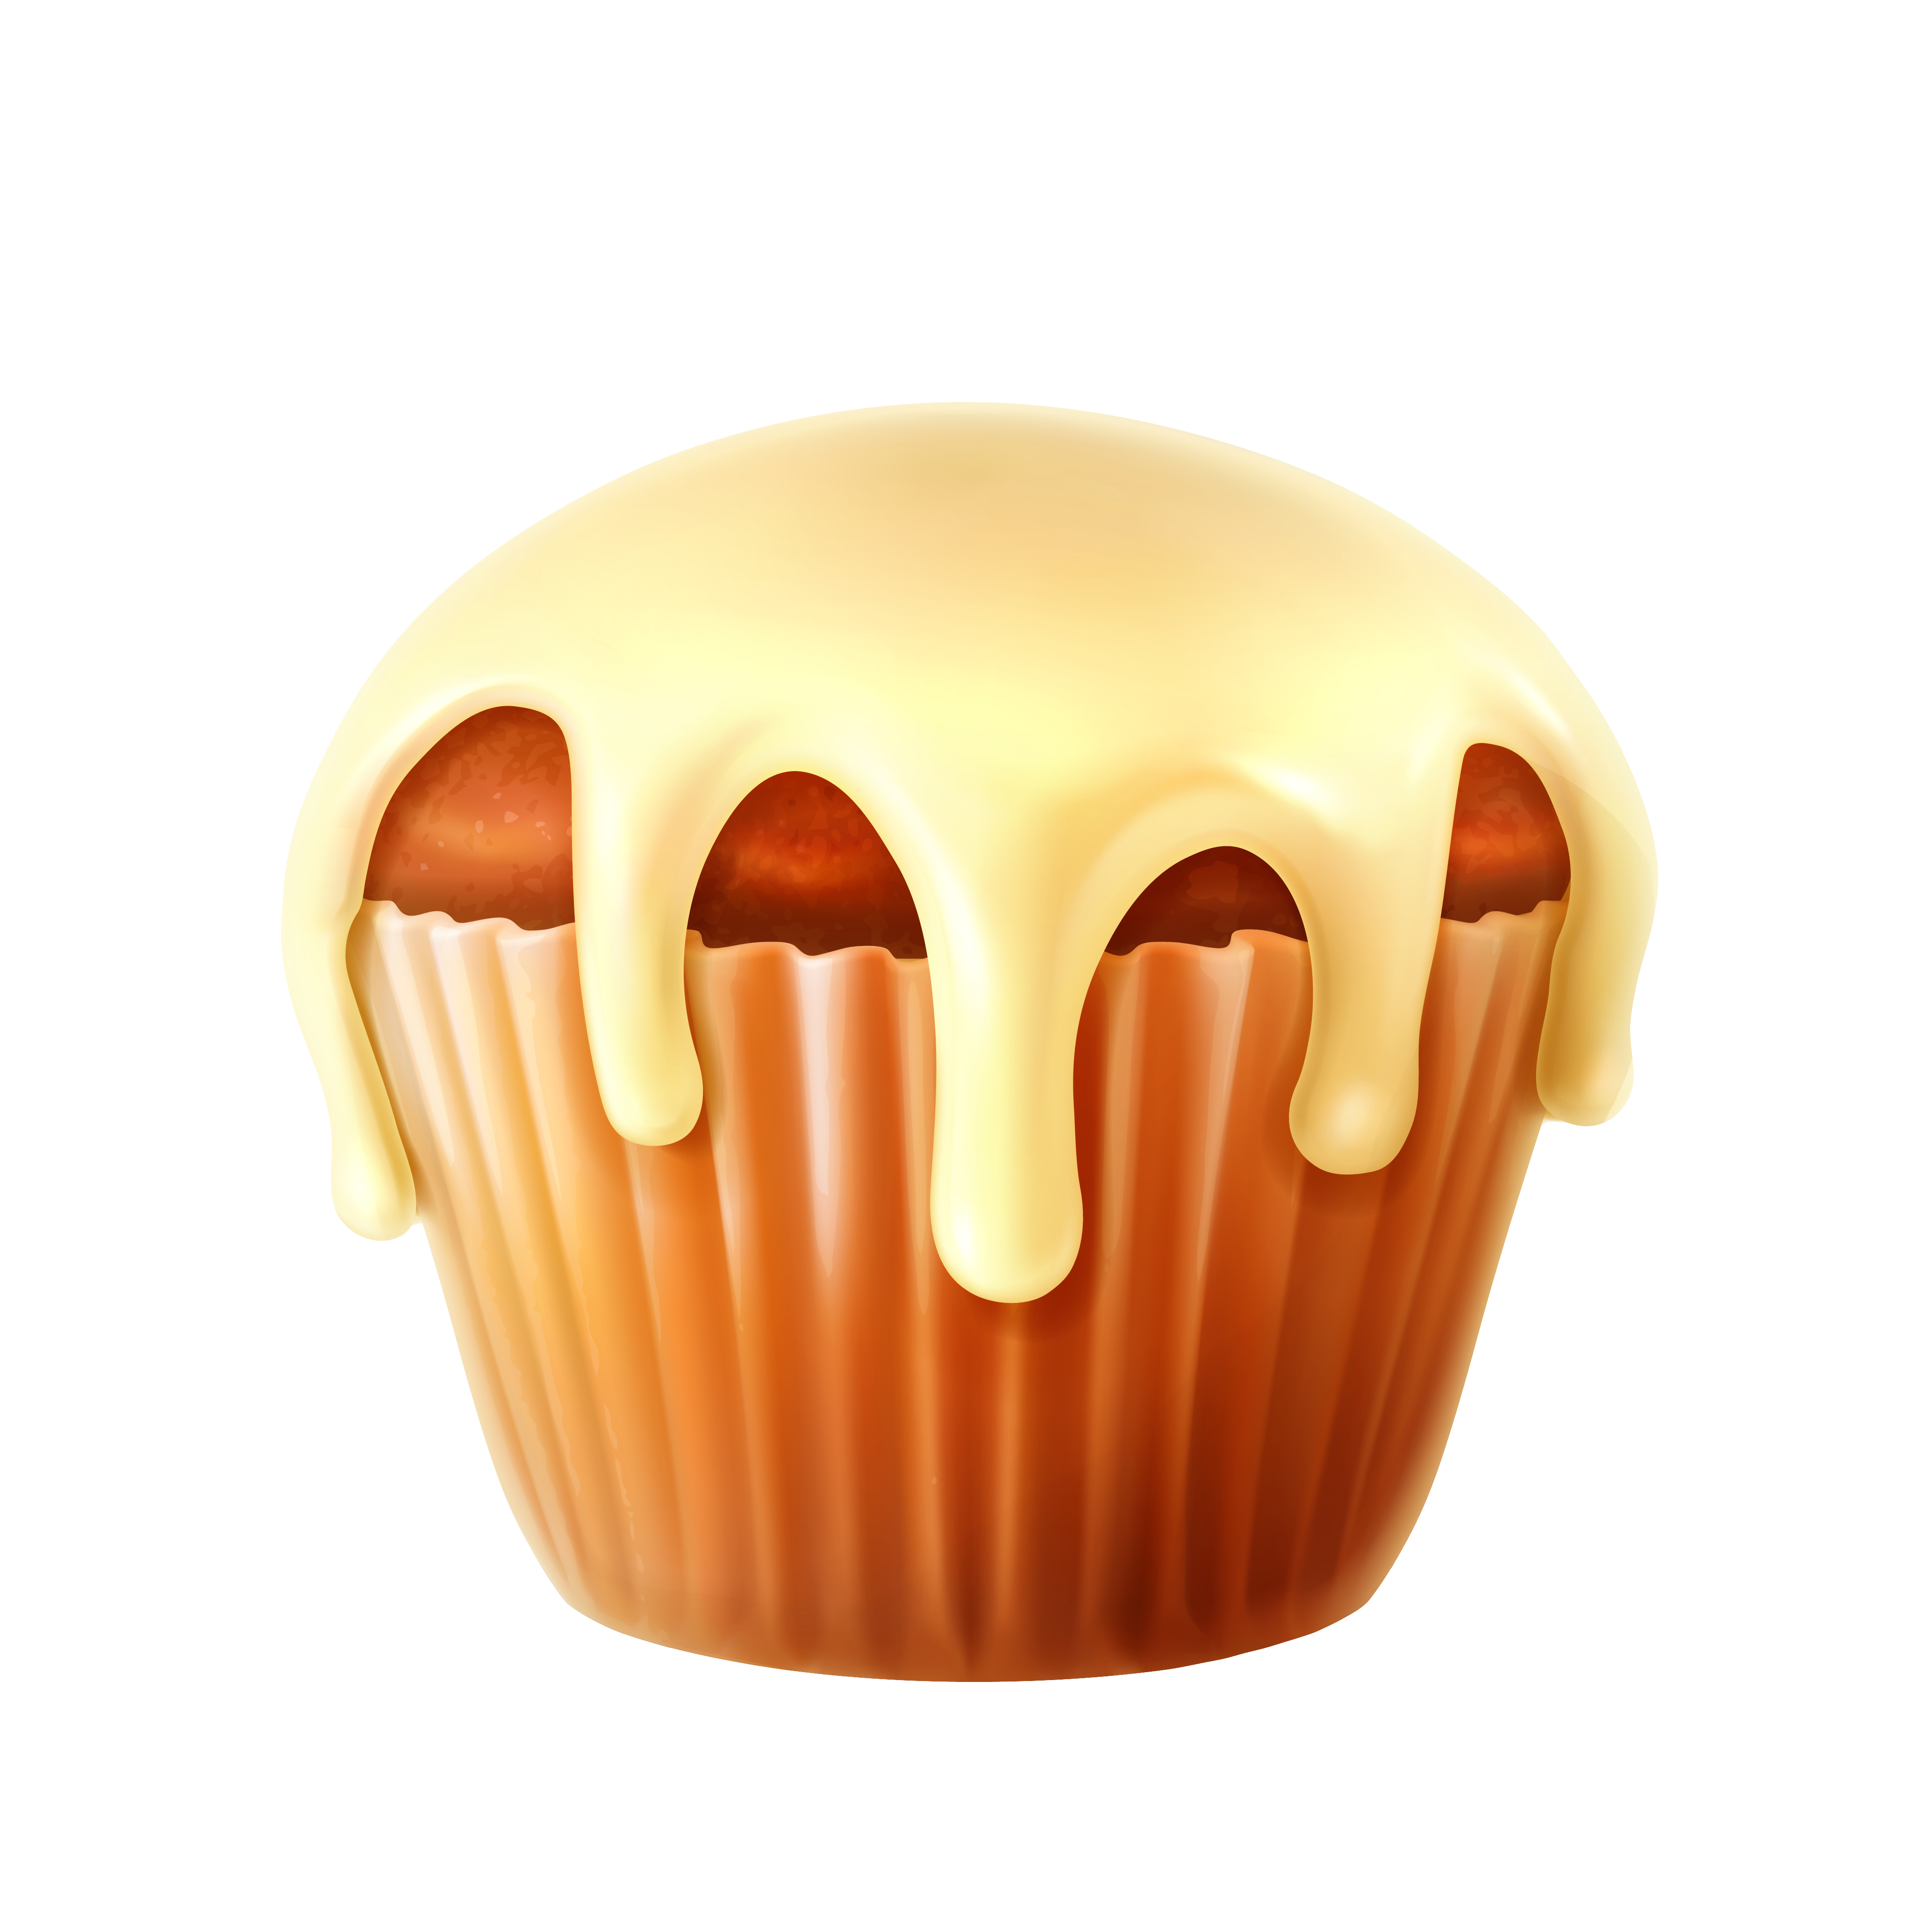 muffins clipart lemon cake